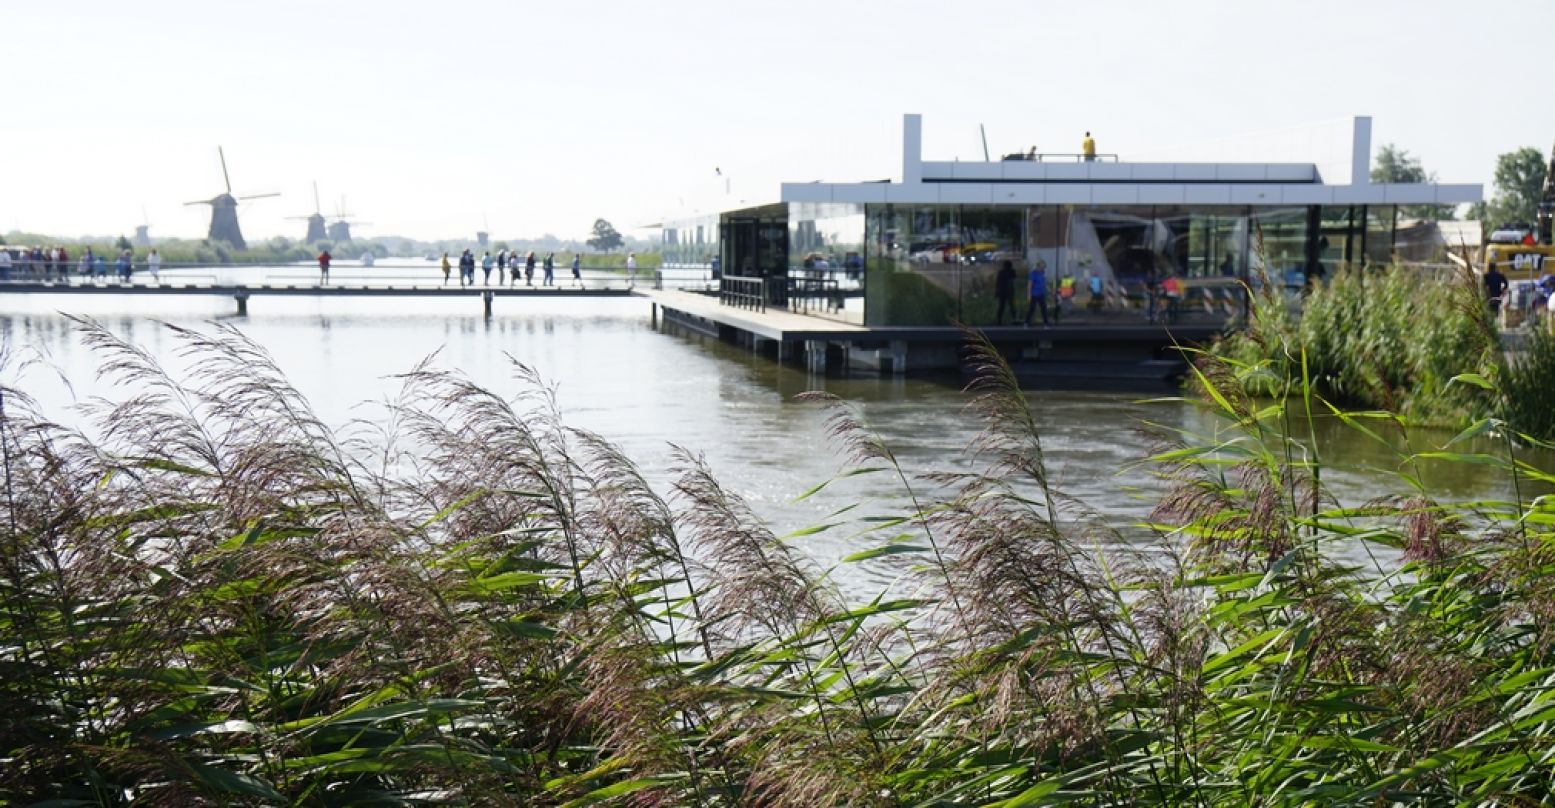 Aan het begin van Kinderdijk ligt een modern bezoekerscentrum waar je tickets kunt kopen en een kopje koffie kunt drinken. Op het dak heb je een fenomenaal uitzicht op alle negentien molens. Foto: Stichting Werelderfgoed Kinderdijk